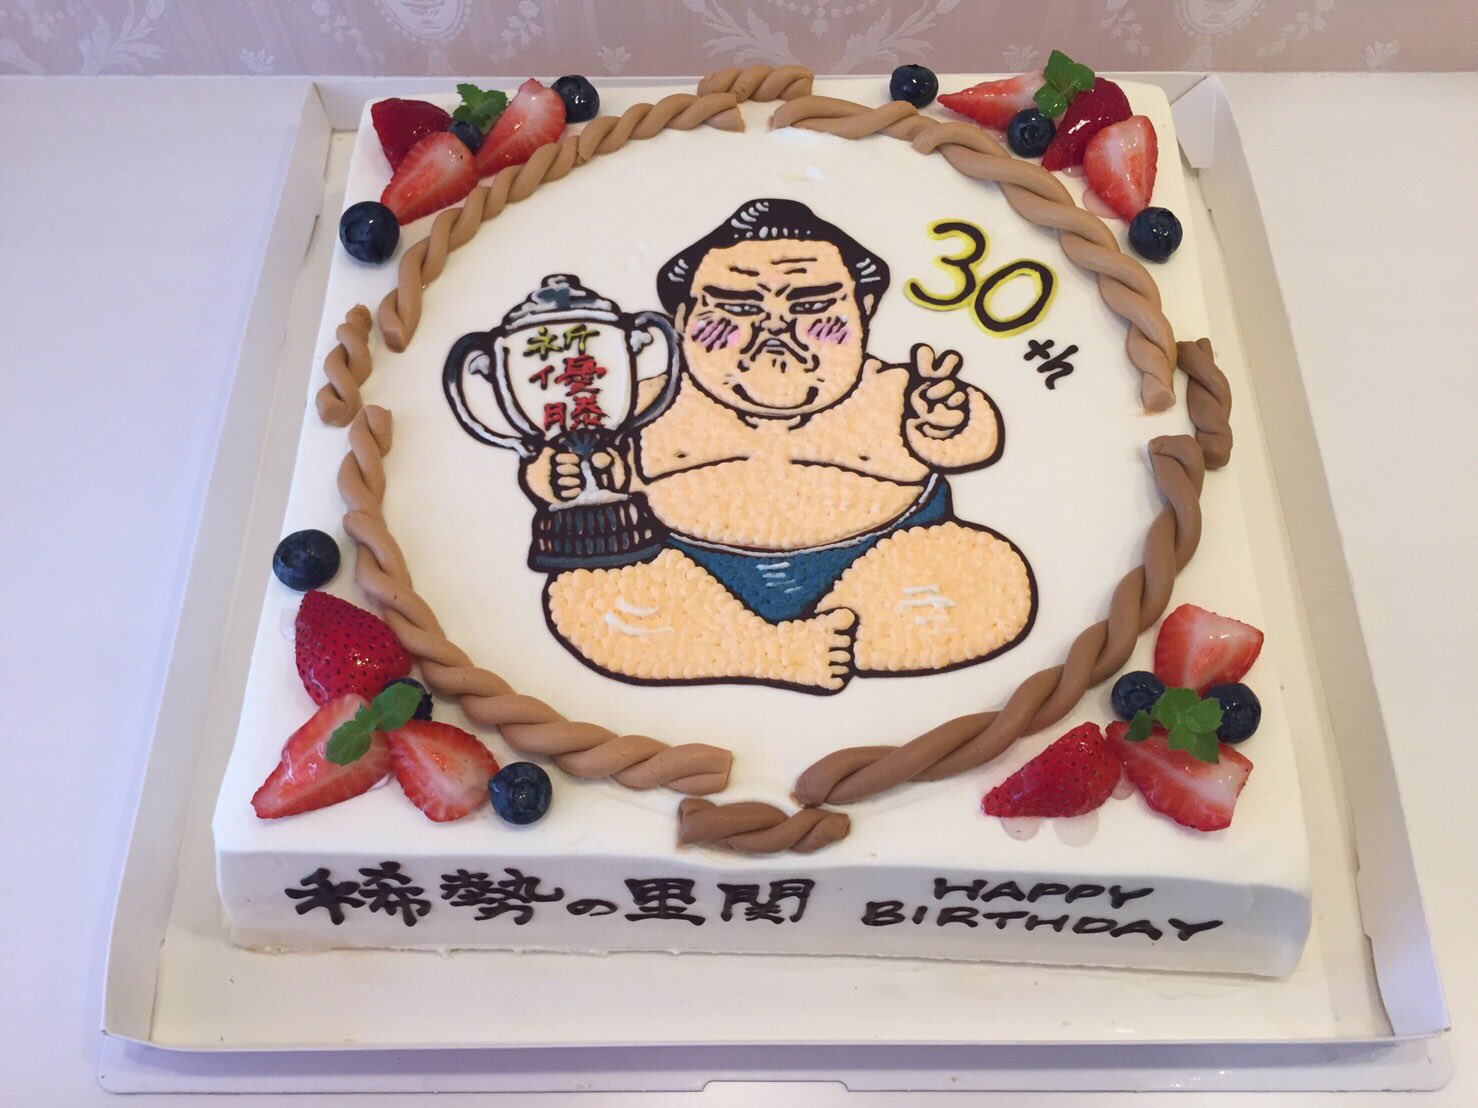 相撲漫画家 琴剣 運営 稀勢の里関30歳おめでとうございます O 今年もバースデーケーキのイラスト描かせて頂きました Sumo 稀勢の里 祝30歳 T Co Hswrkiys73 Twitter